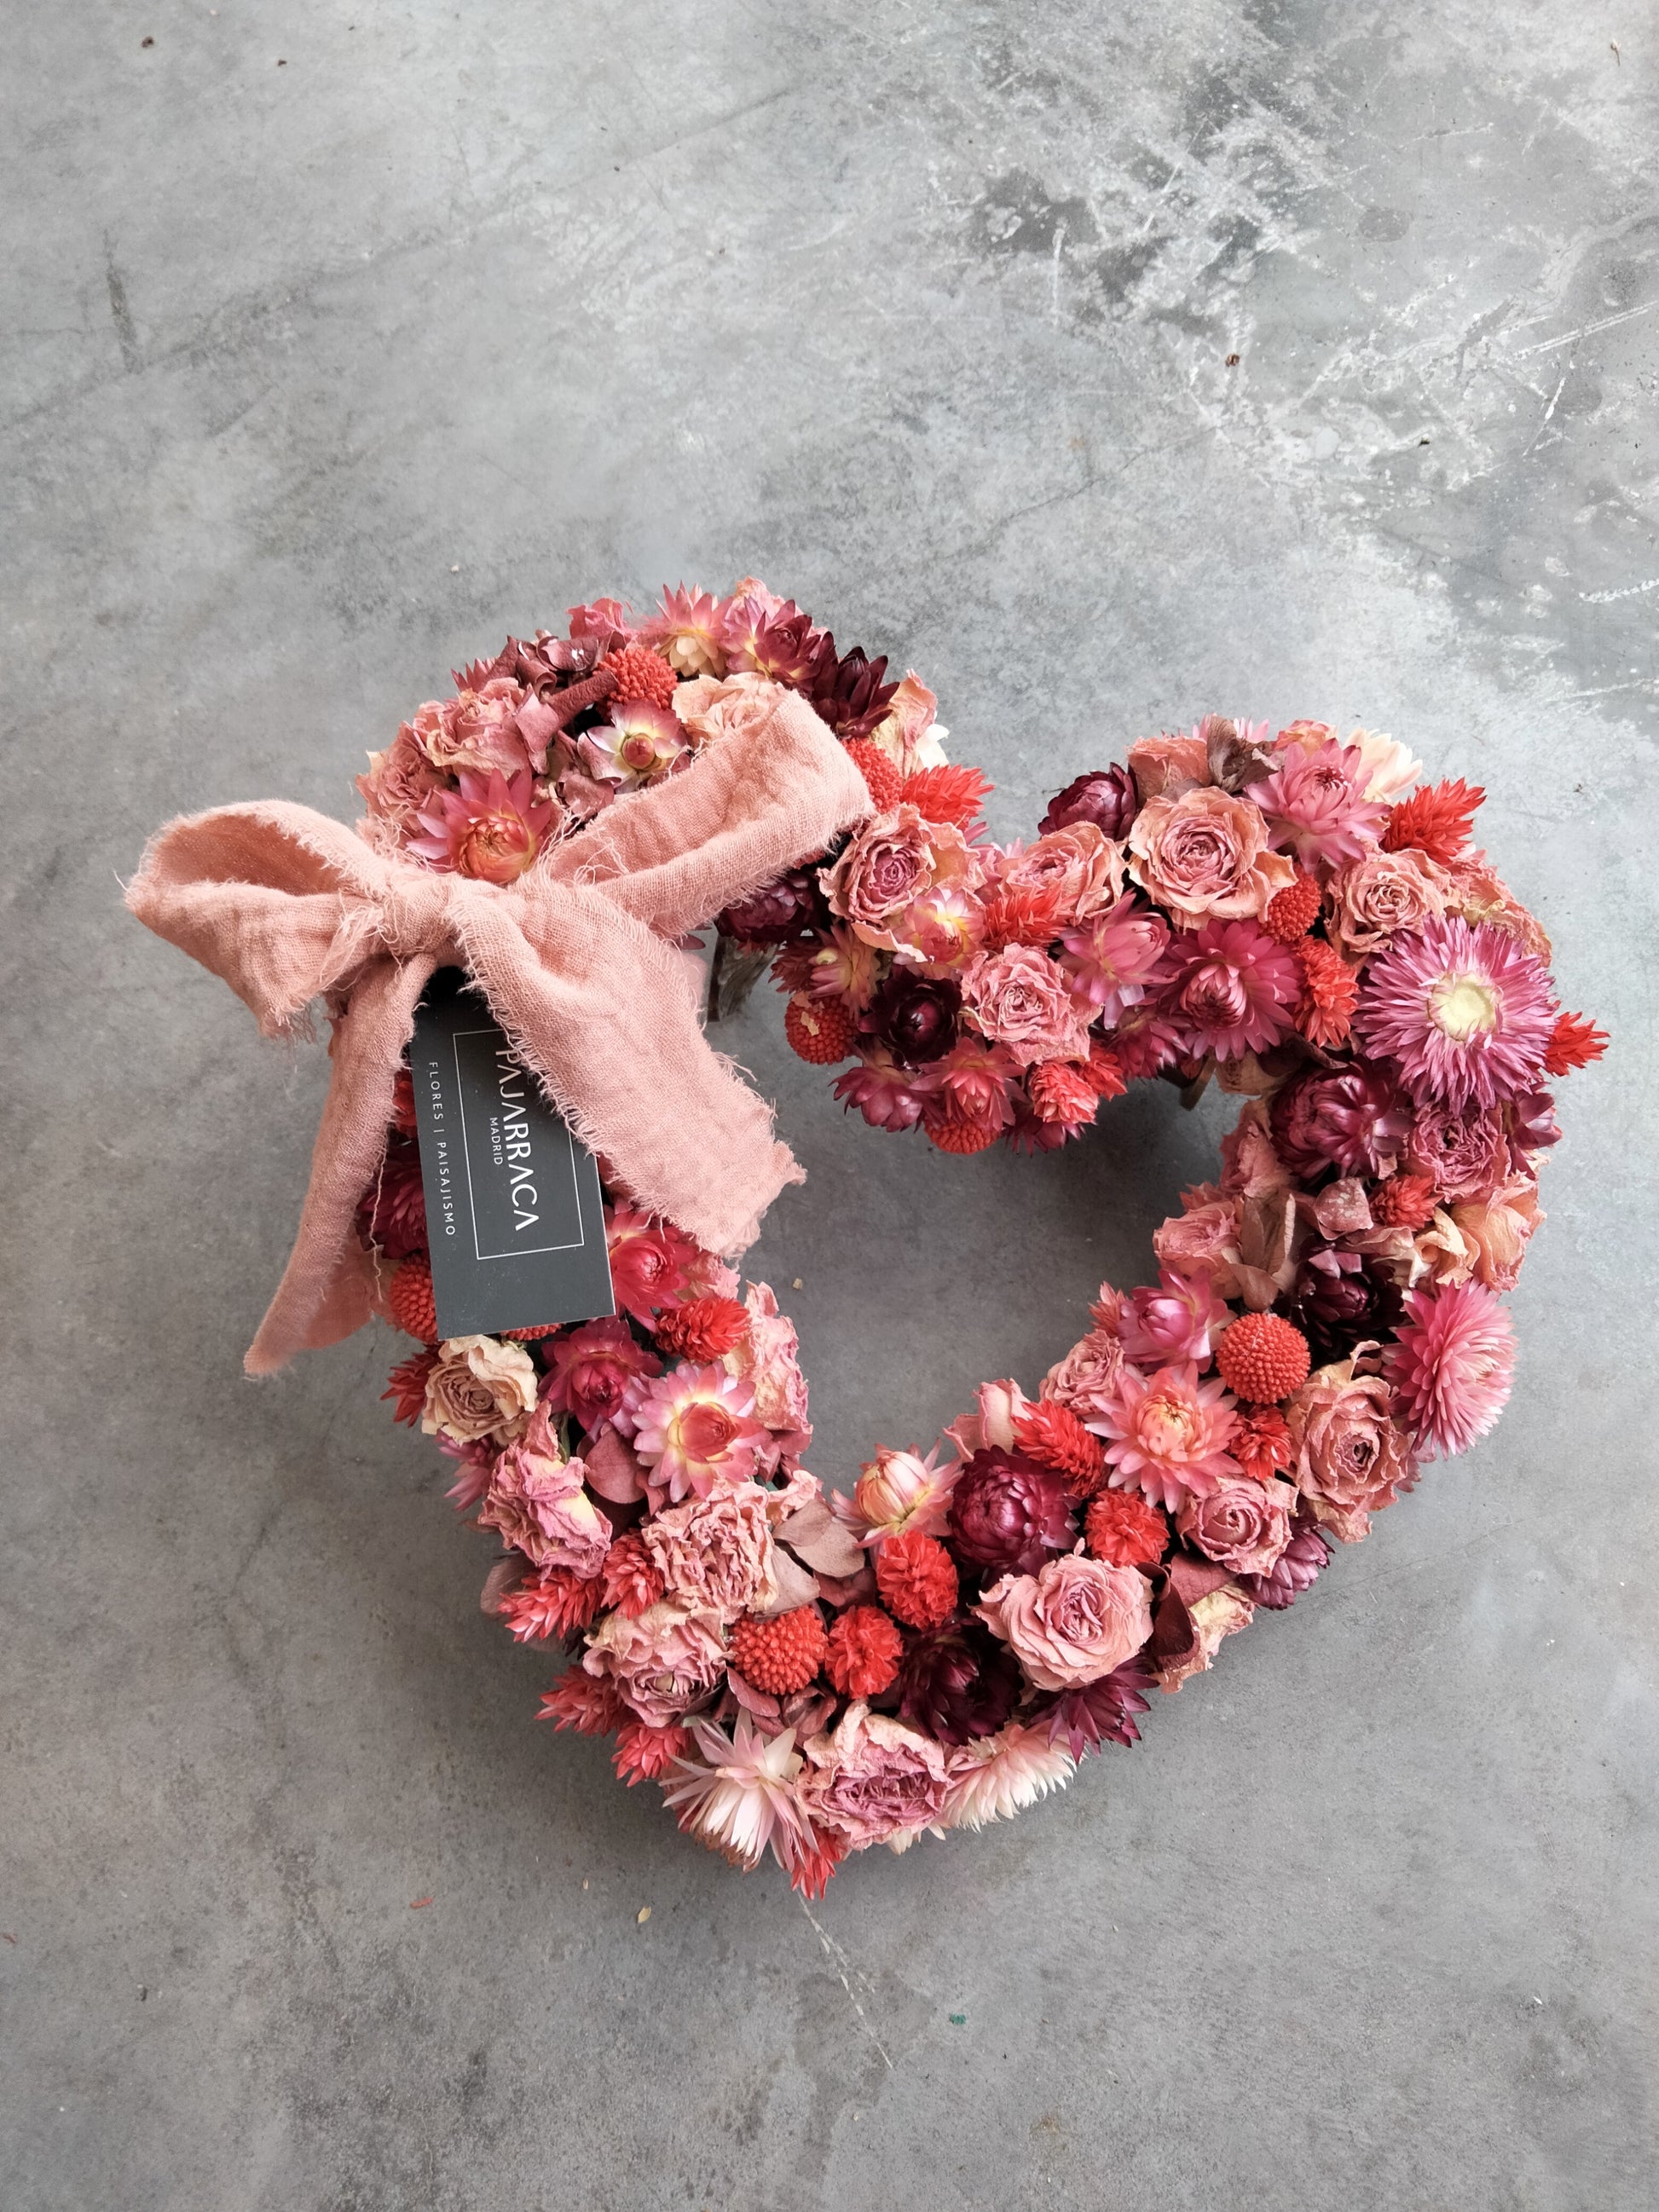 Regalo San Valentín con dedicatoria y corazón de flores preservadas